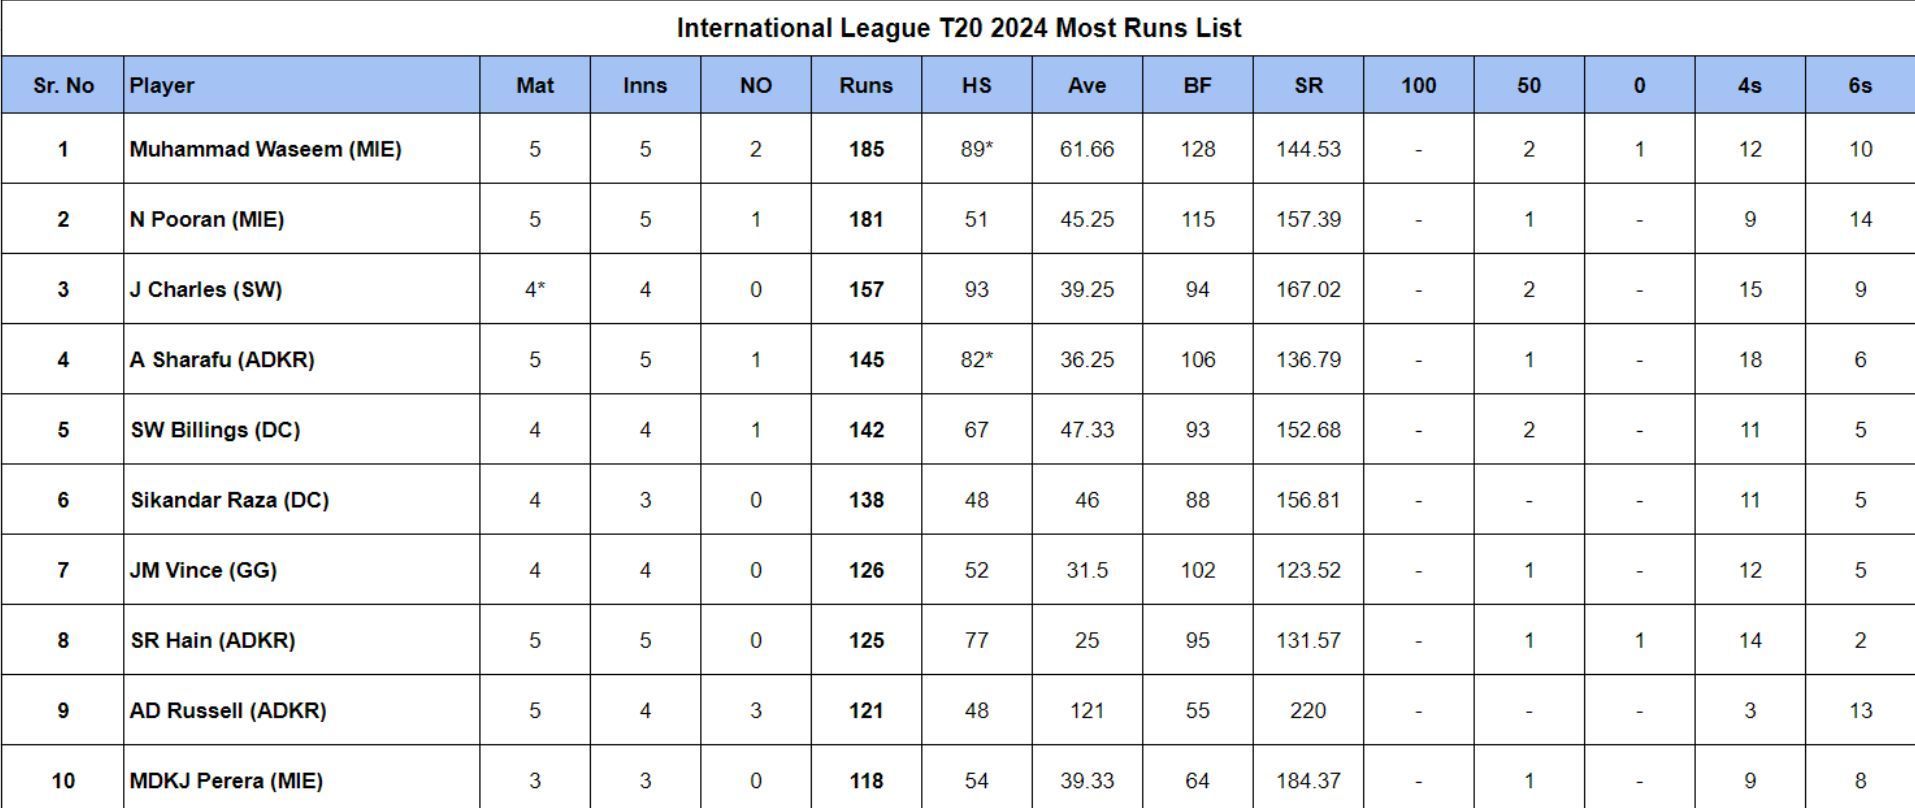 International League T20 2024 Most Runs List updated after Match 13